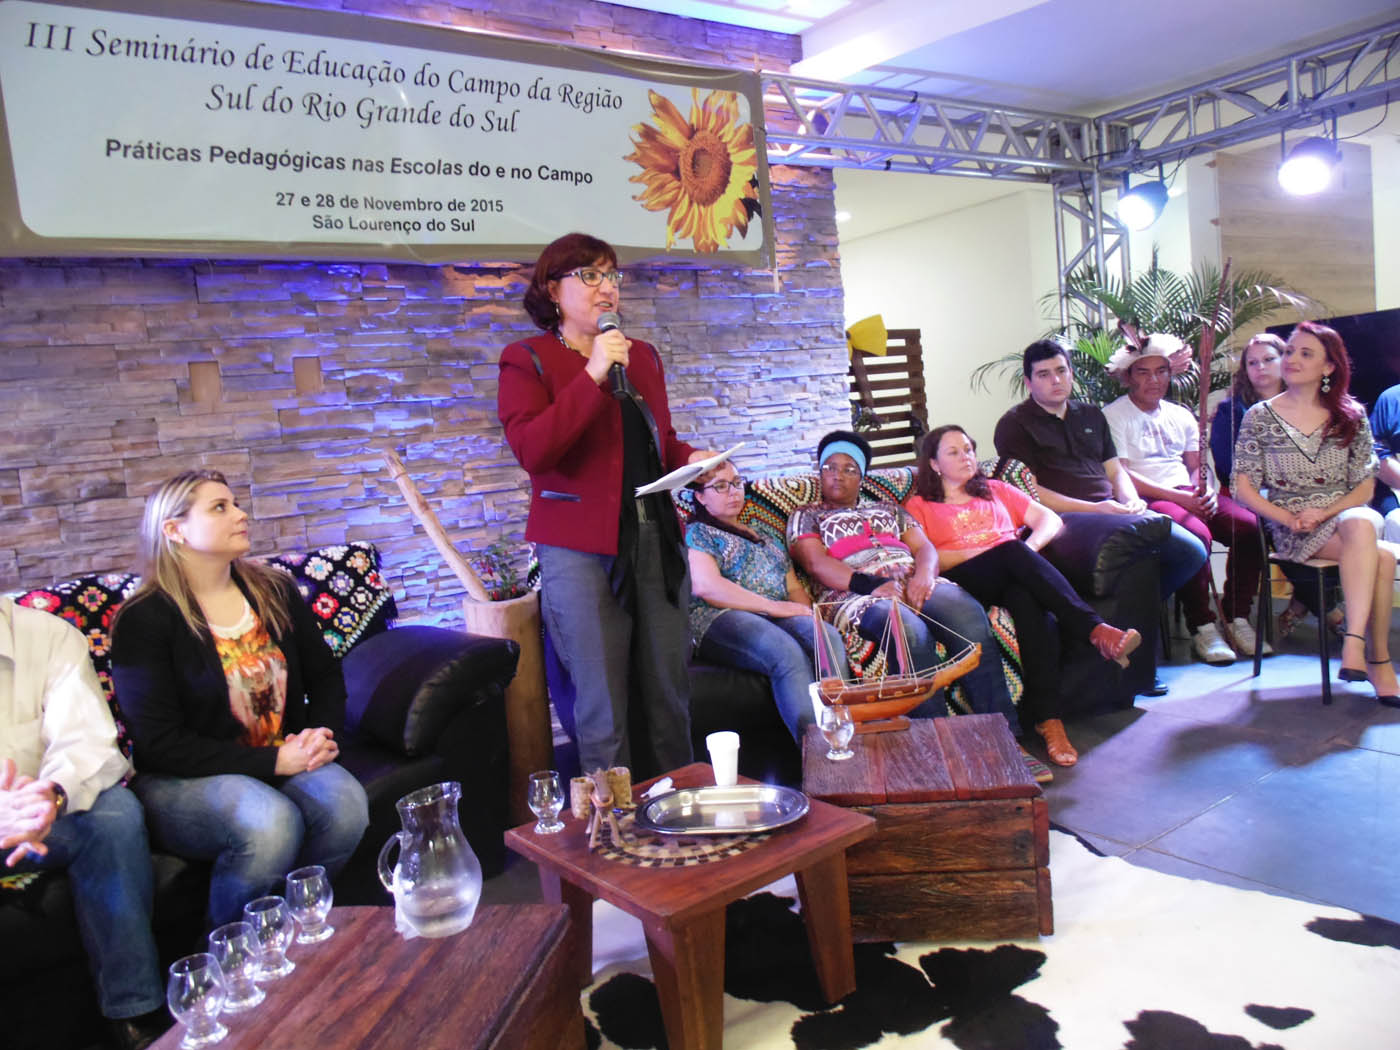 Participação da reitora da FURG, Cleuza Dias, durante a cerimônia de abertura